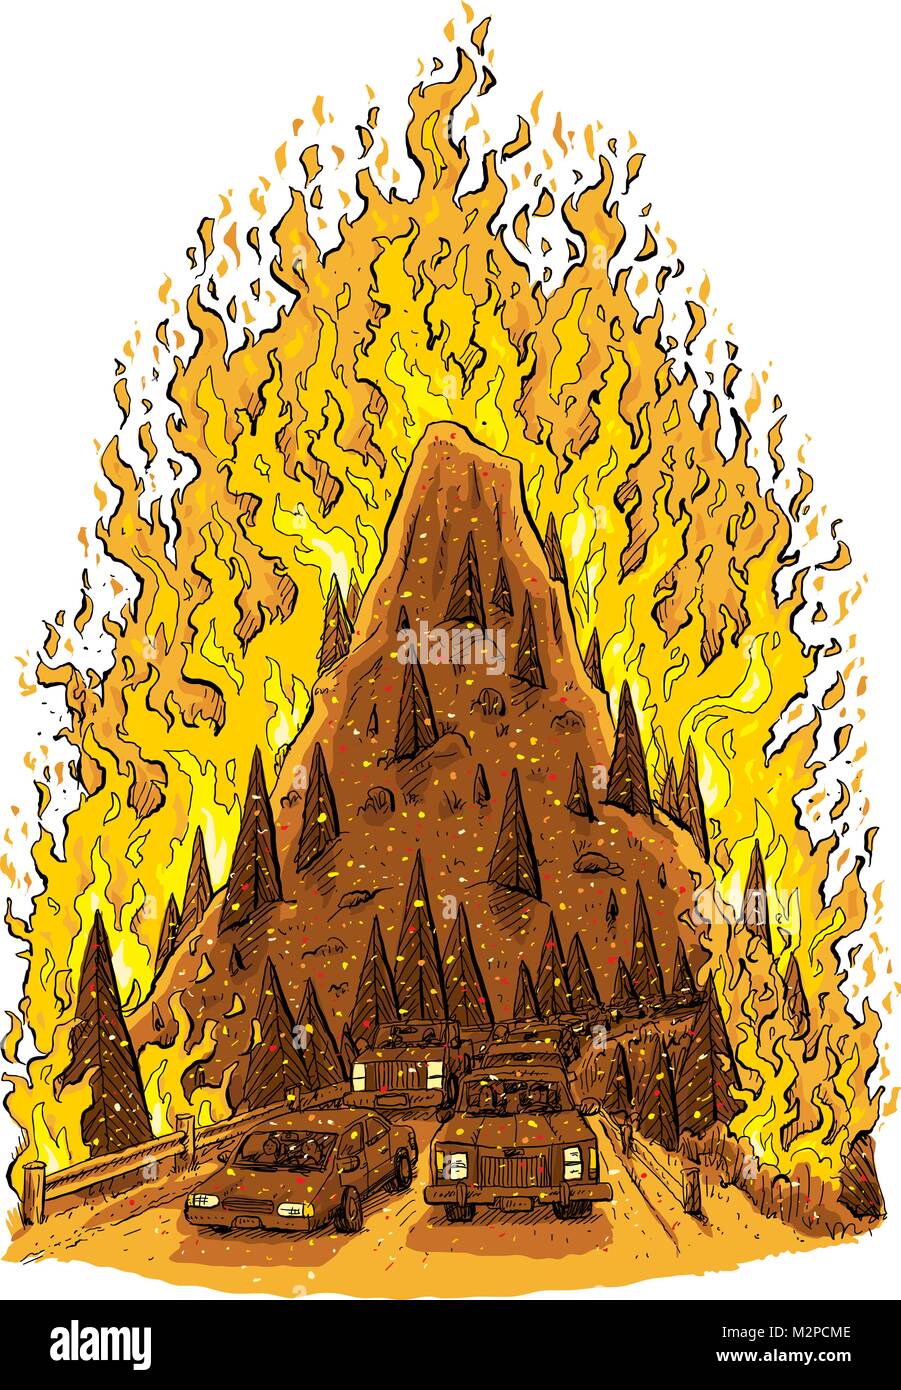 Eine Karikatur eines tobenden Waldbrand verbrauchen einen Berg Hügel mit einer Straße voller evakuieren Autos im Vordergrund. Stock Vektor